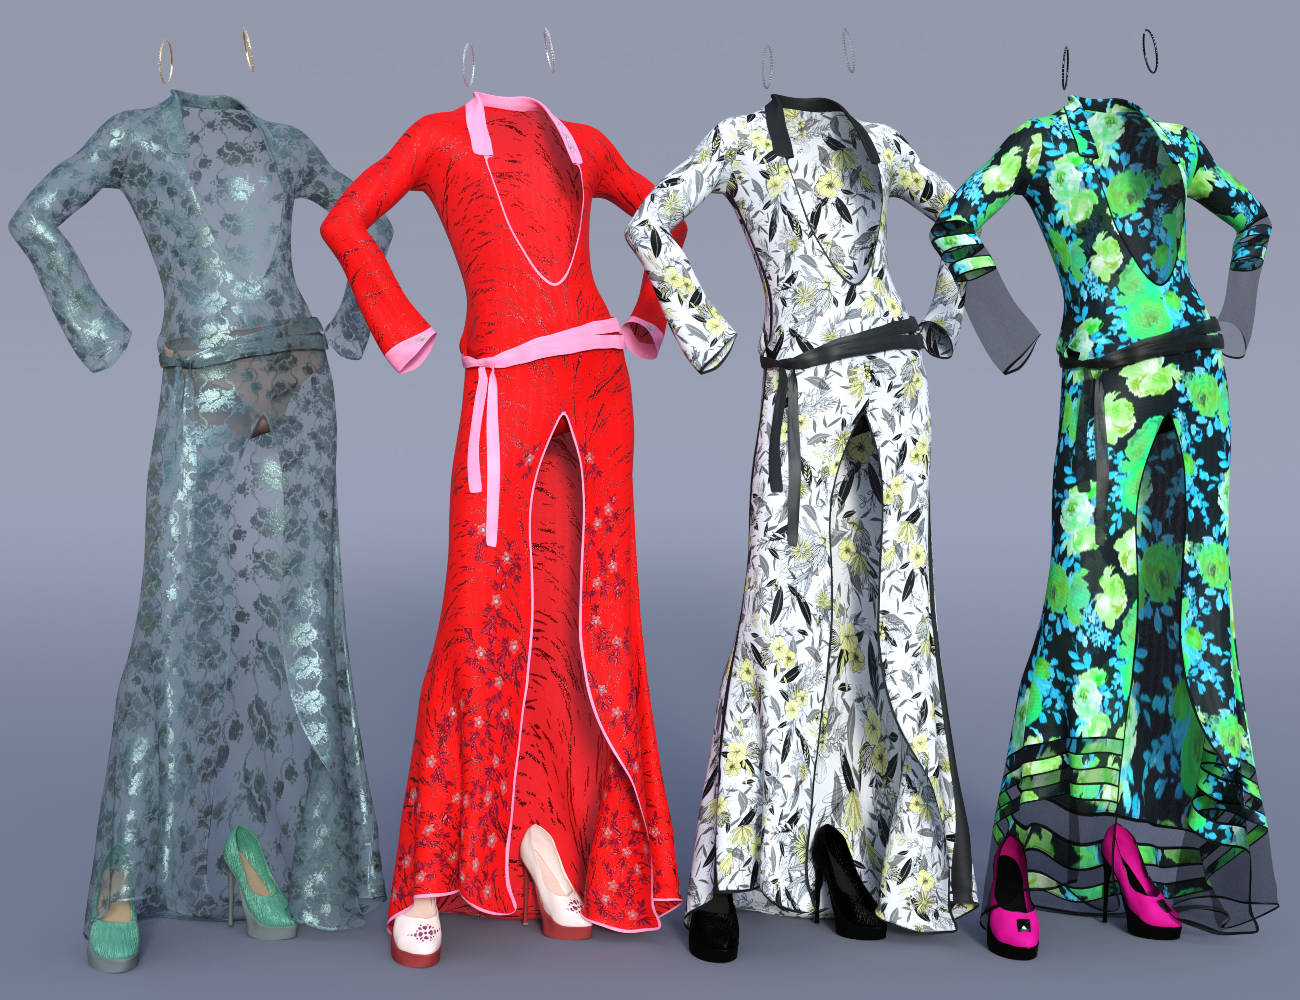 dForce Evening Dress Outfit Texture Addon by: PixelTizzyFit, 3D Models by Daz 3D